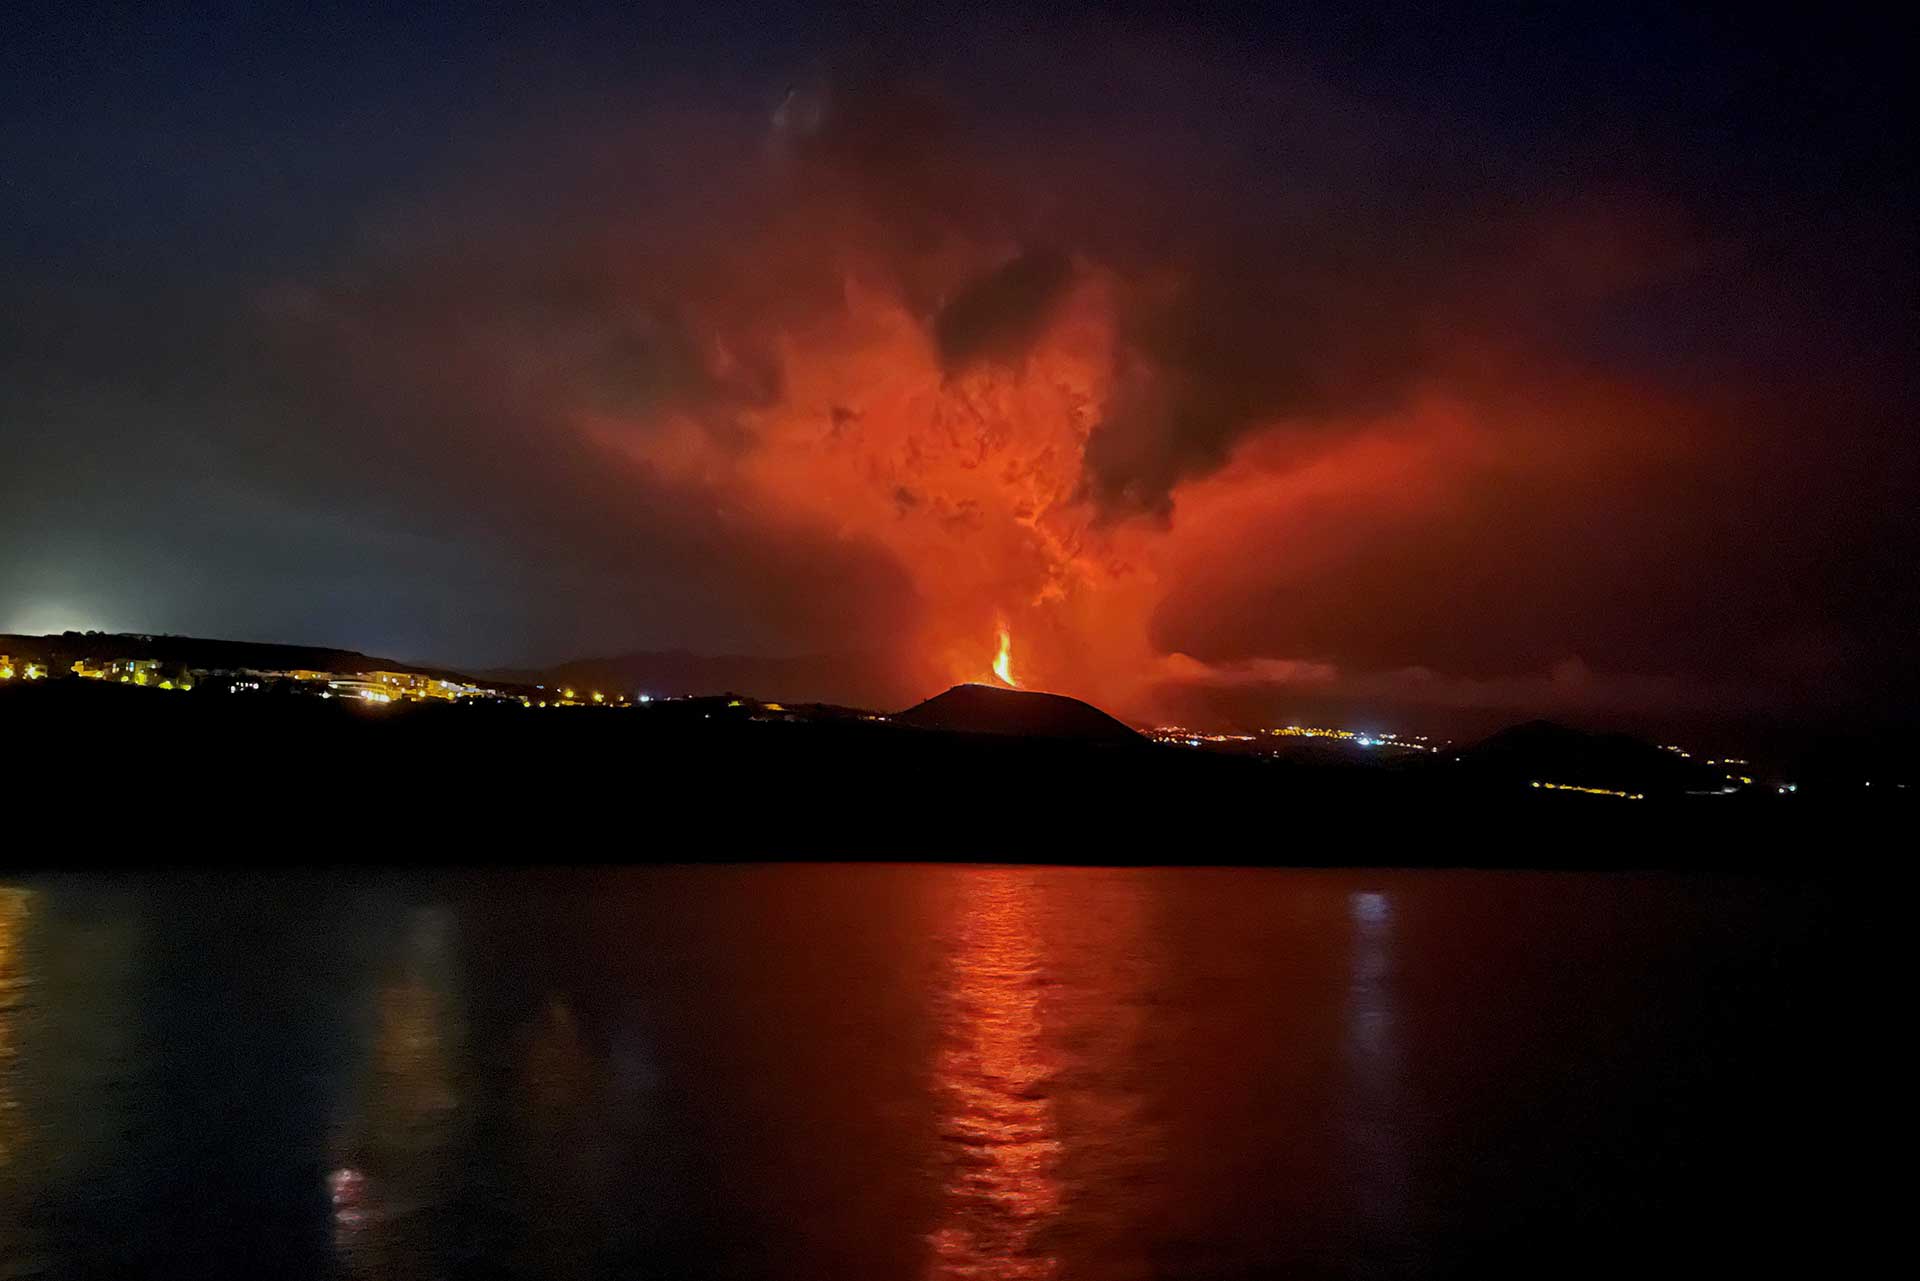 Reflexiones bajo el volcán de La Palma. ¿Es posible encontrar belleza en la destrucción?